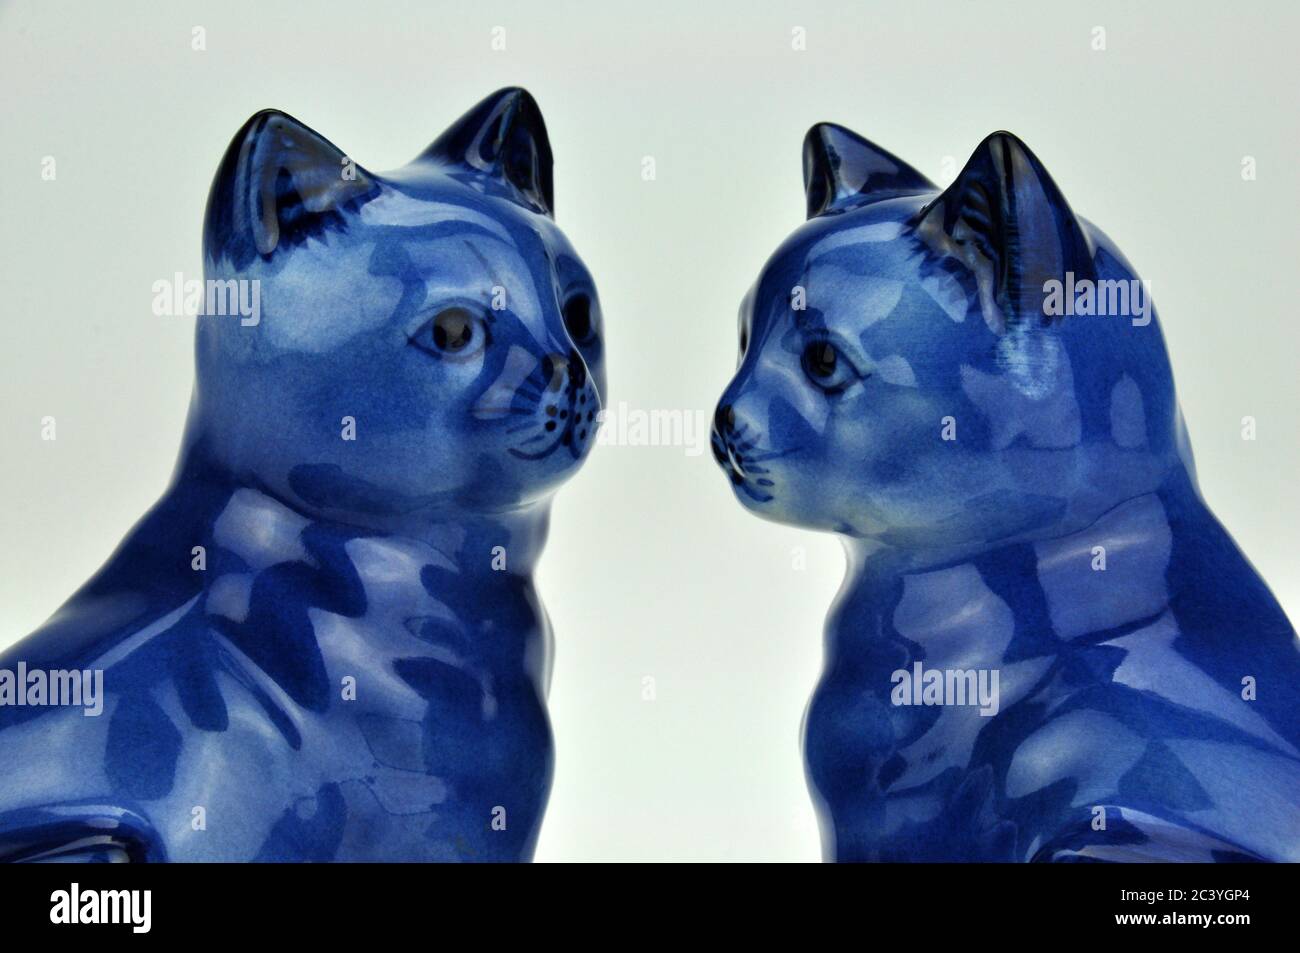 Figurines de chat en porcelaine chinoise bleue et blanche. Excellente image pour l'amitié, le mariage et la fidélité. Banque D'Images